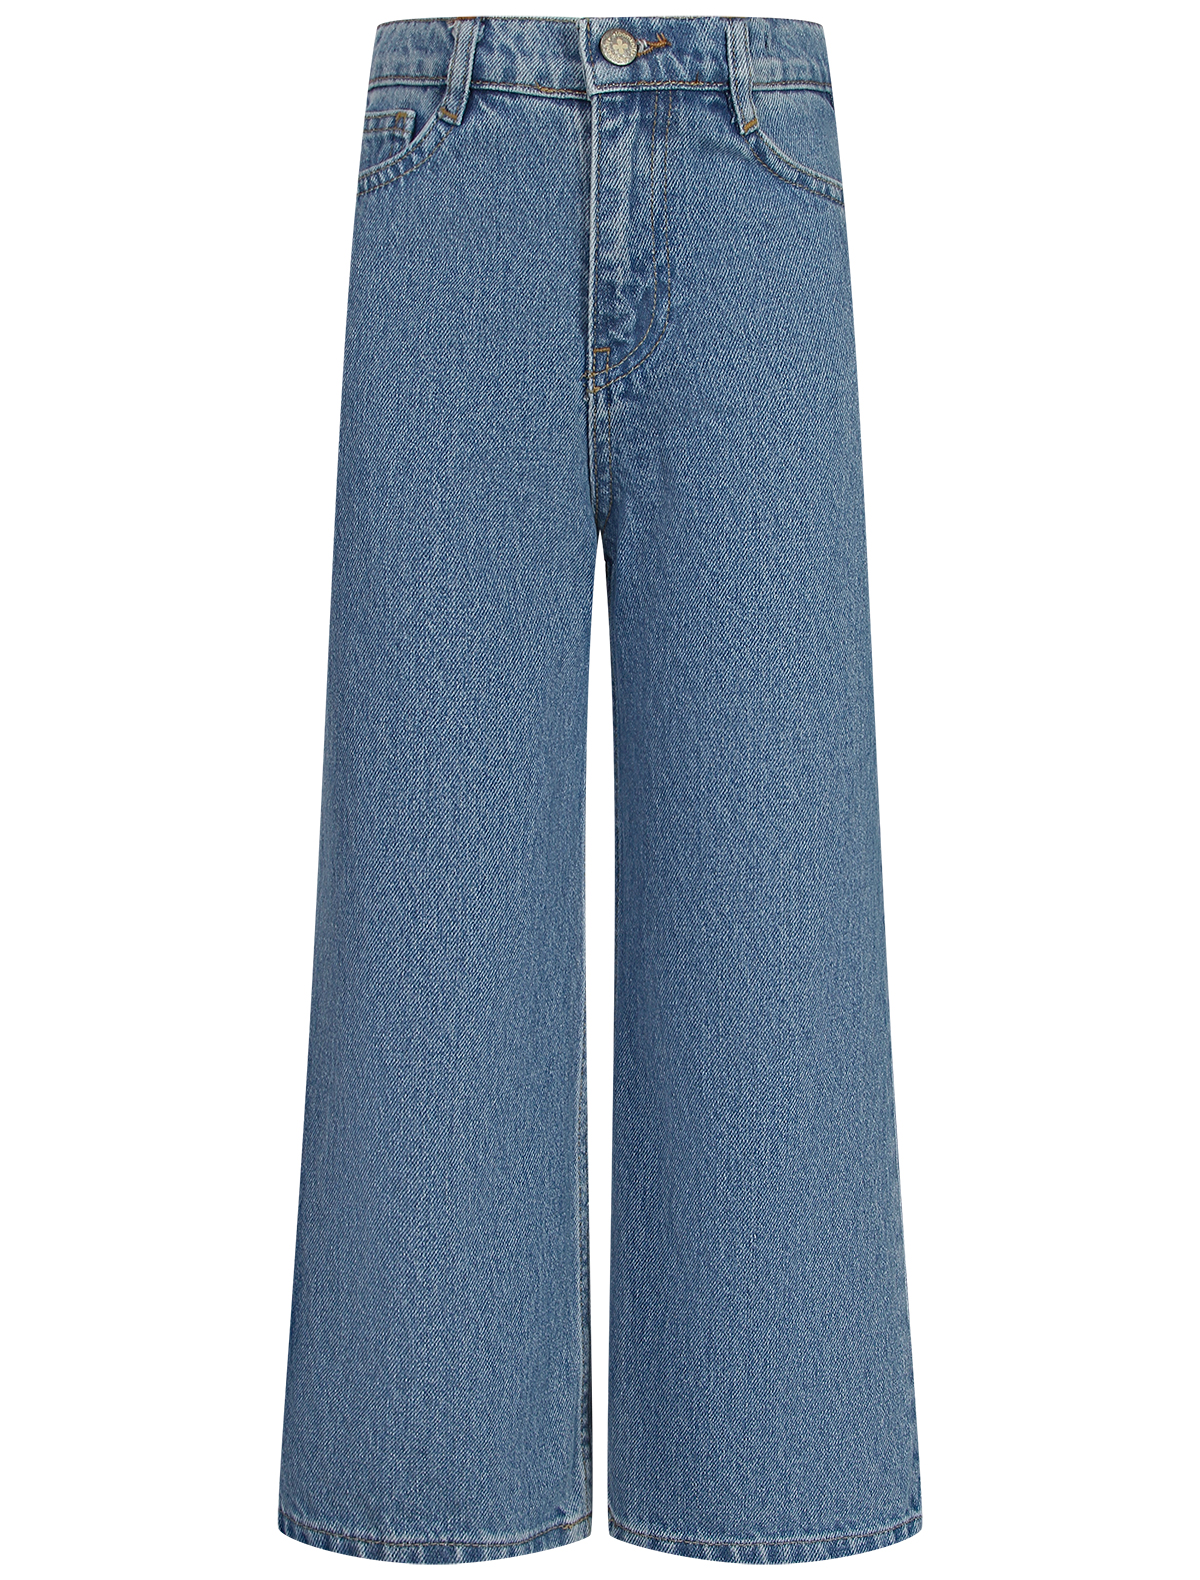 джинсы loom для девочки, синие